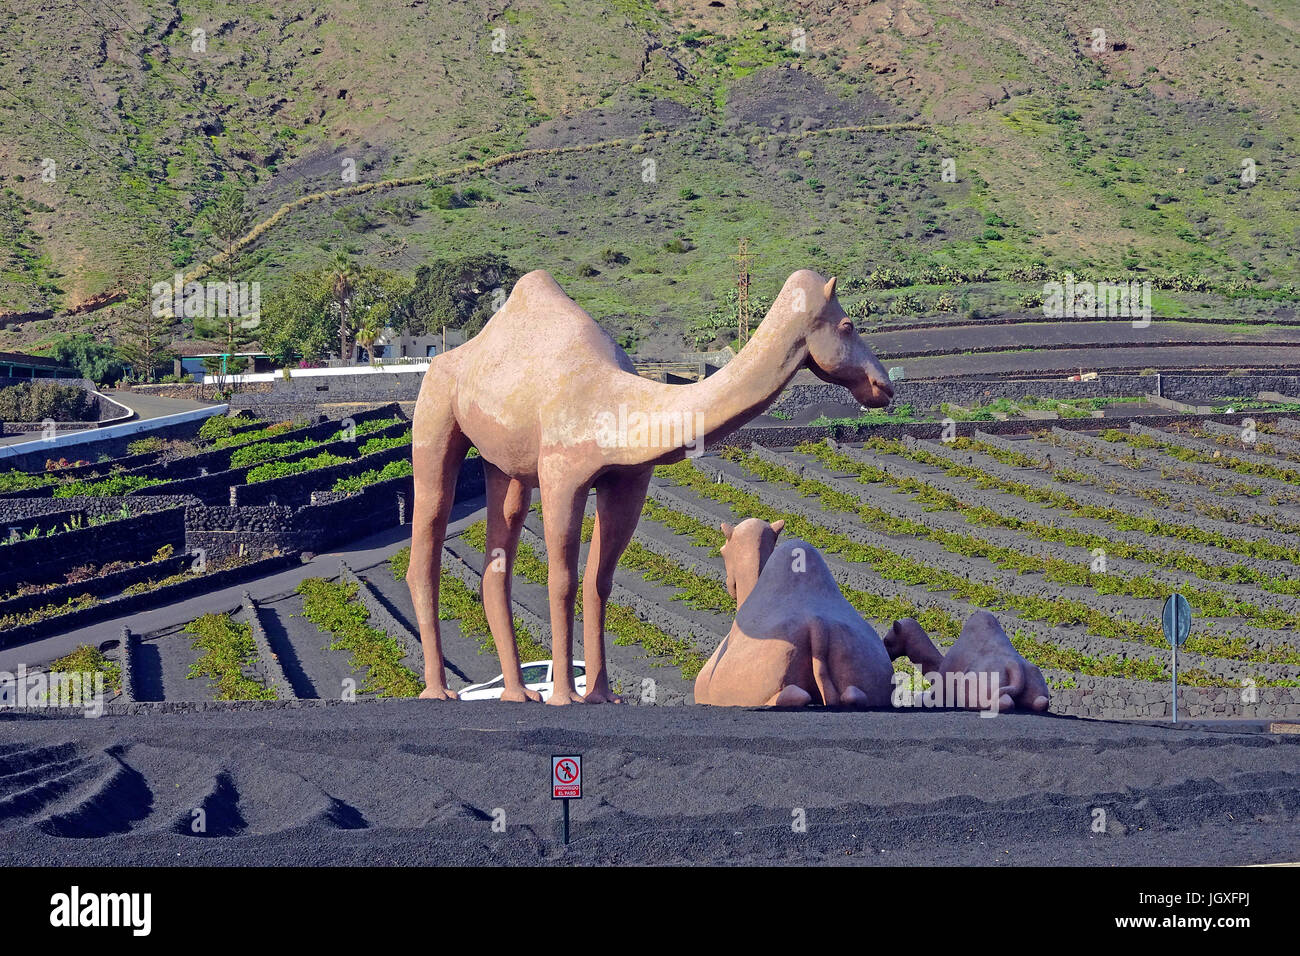 Uebergrosse Kamel-Figuren an einem Kresiverkehr kurz vor Uga, Lanzarote, Kanarische Inseln, Europa | Big Camle statue at a roundabout, Uga, Lanzarote, Stock Photo